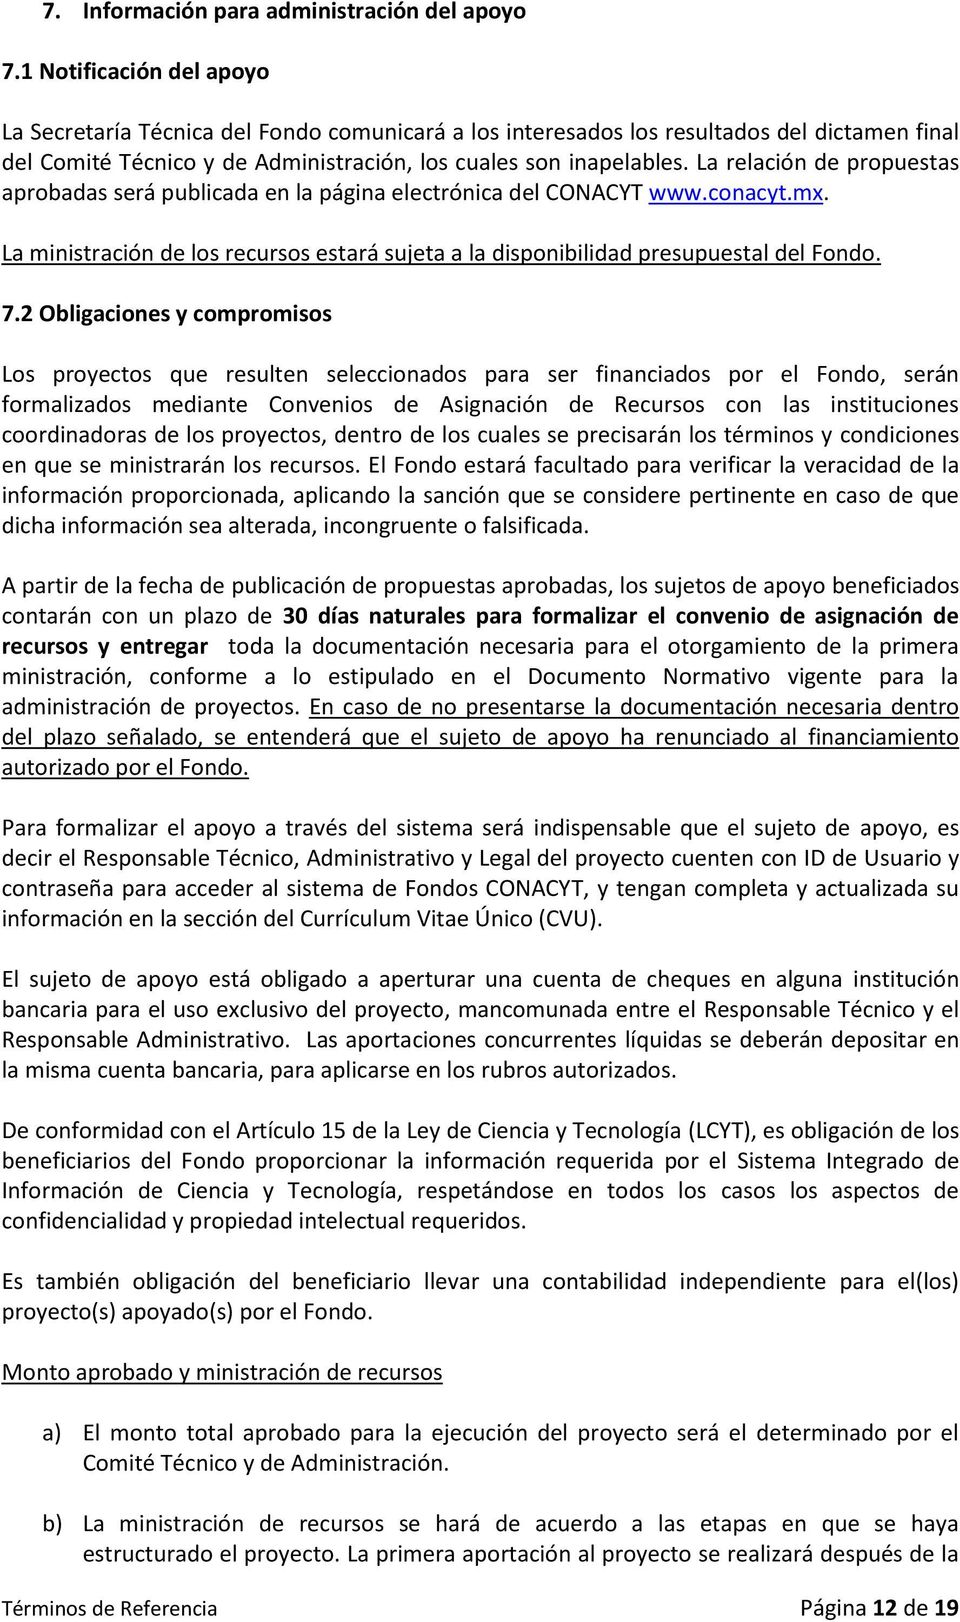 La relación de propuestas aprobadas será publicada en la página electrónica del CONACYT www.conacyt.mx. La ministración de los recursos estará sujeta a la disponibilidad presupuestal del Fondo. 7.